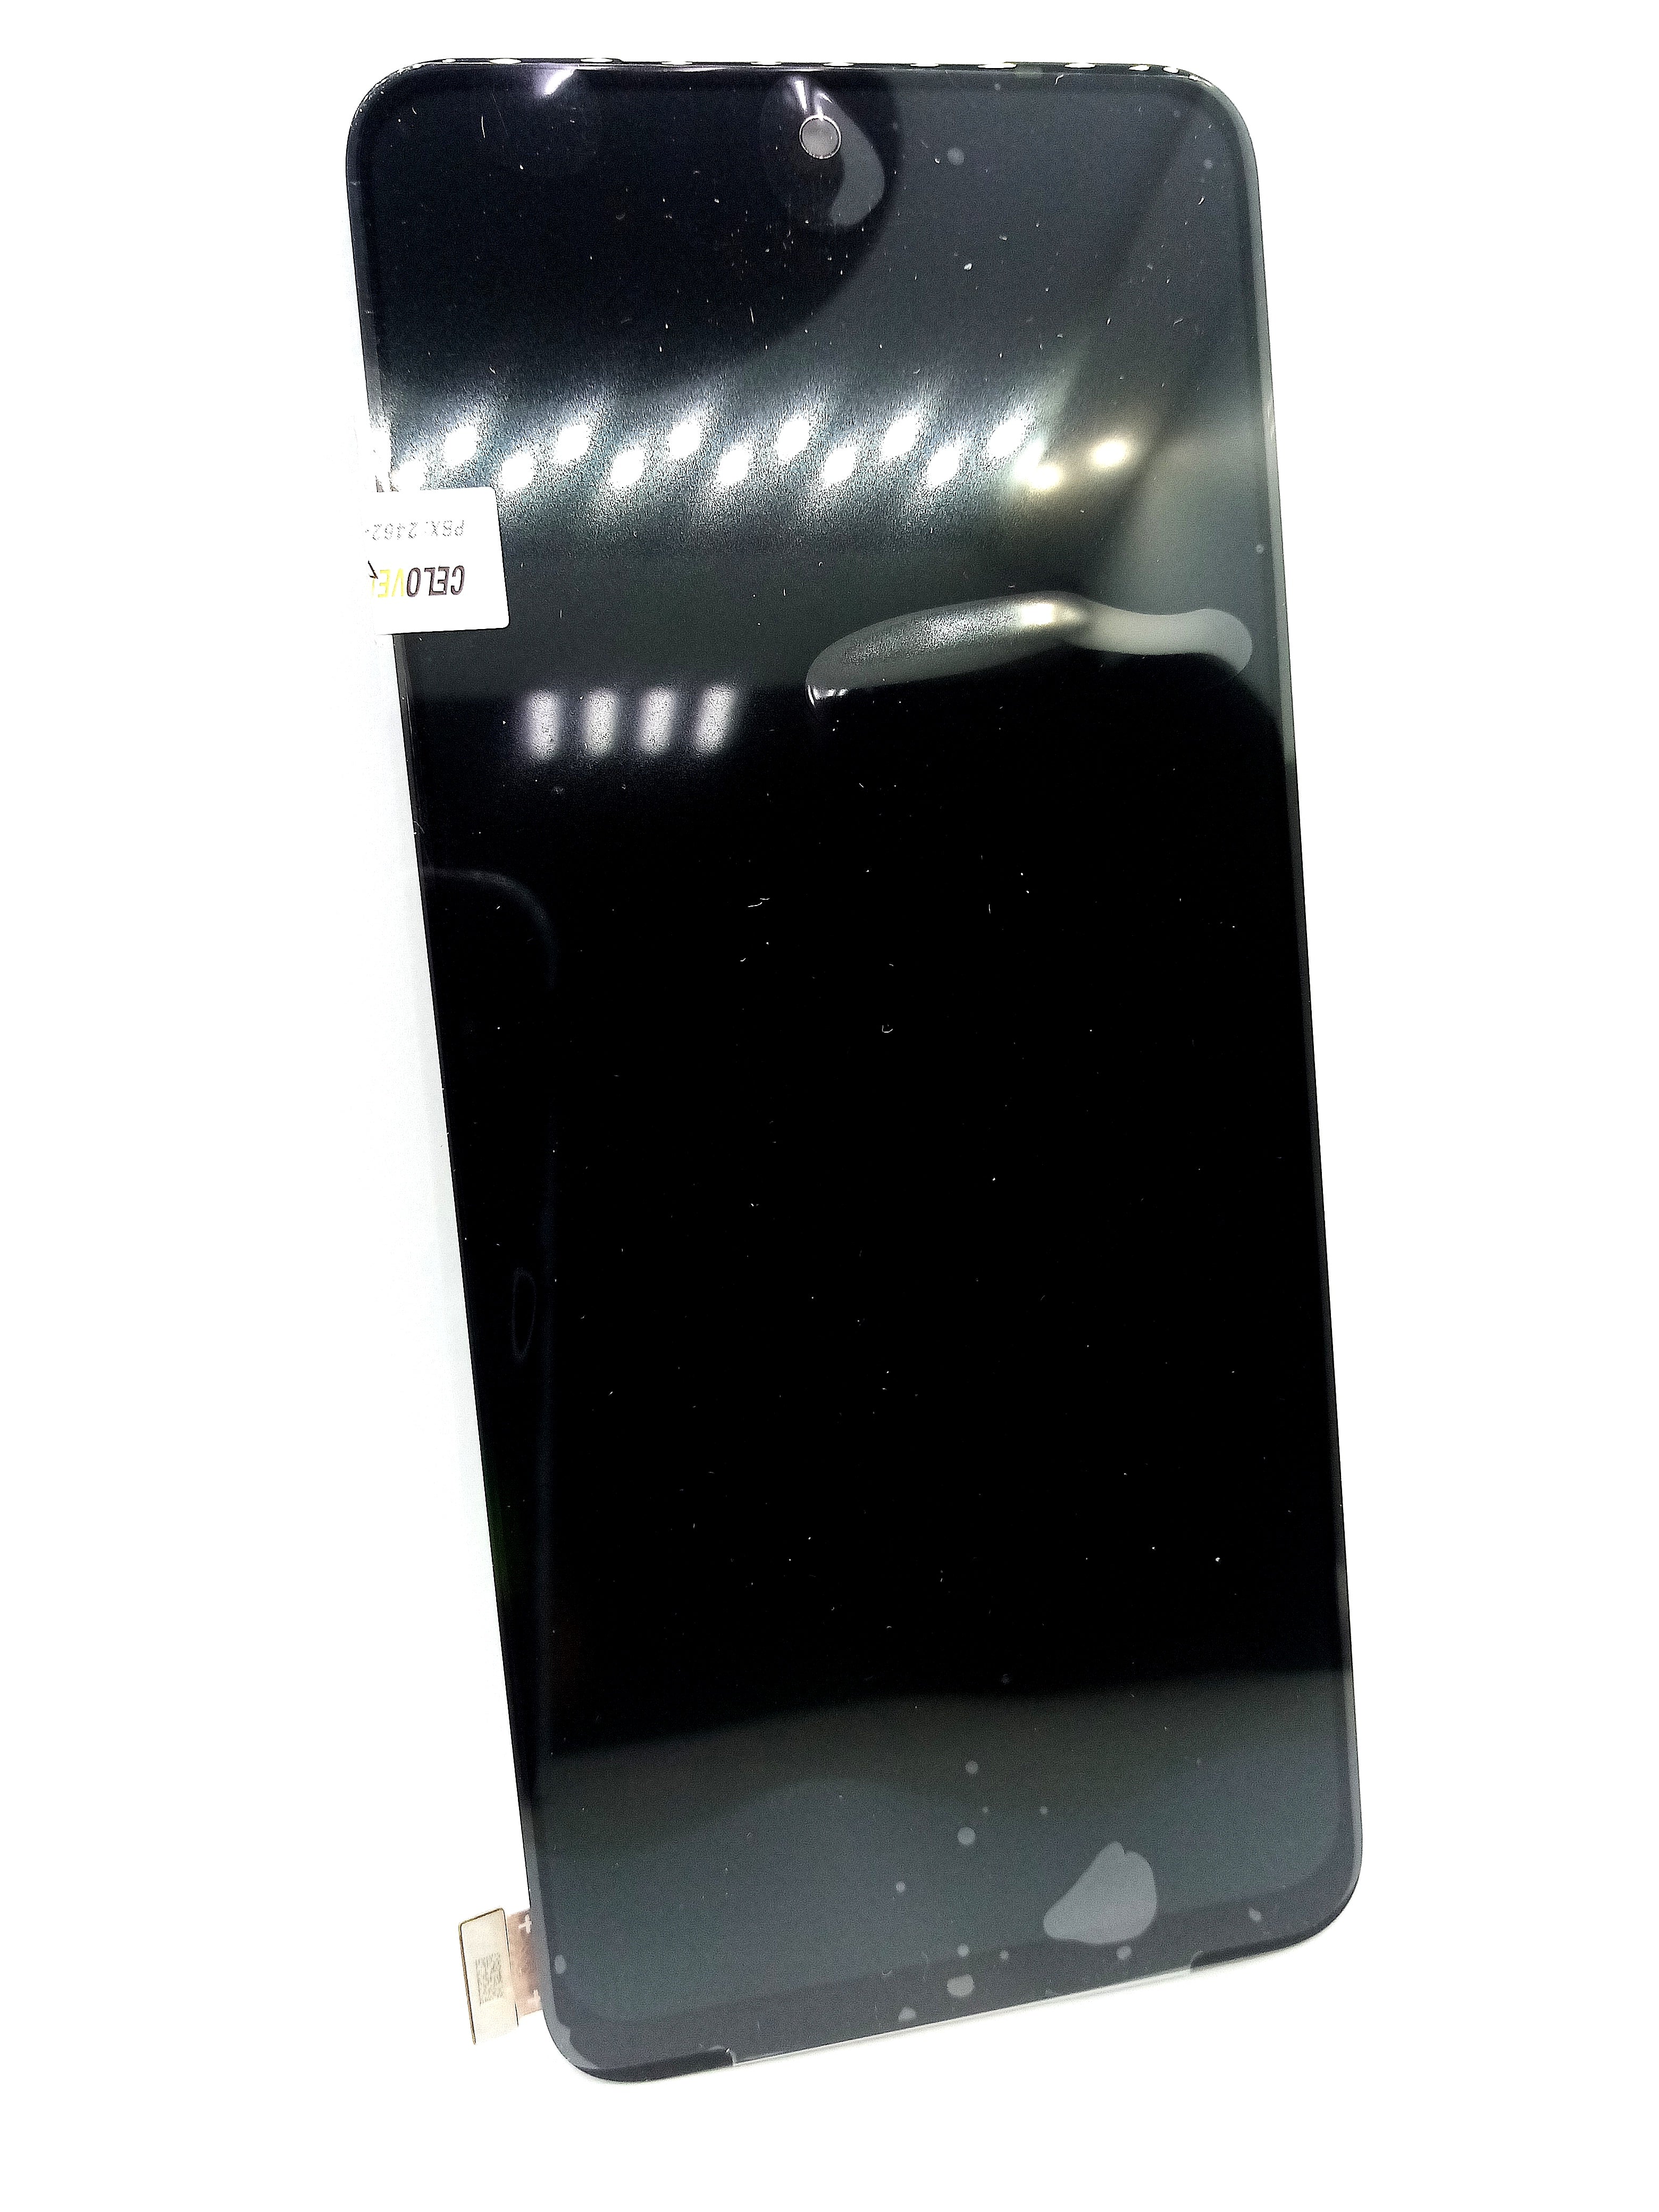 Pantalla para iPhone 11 Pro Max - Generica - Calidad Incell – Celovendo.  Repuestos para celulares en Guatemala.